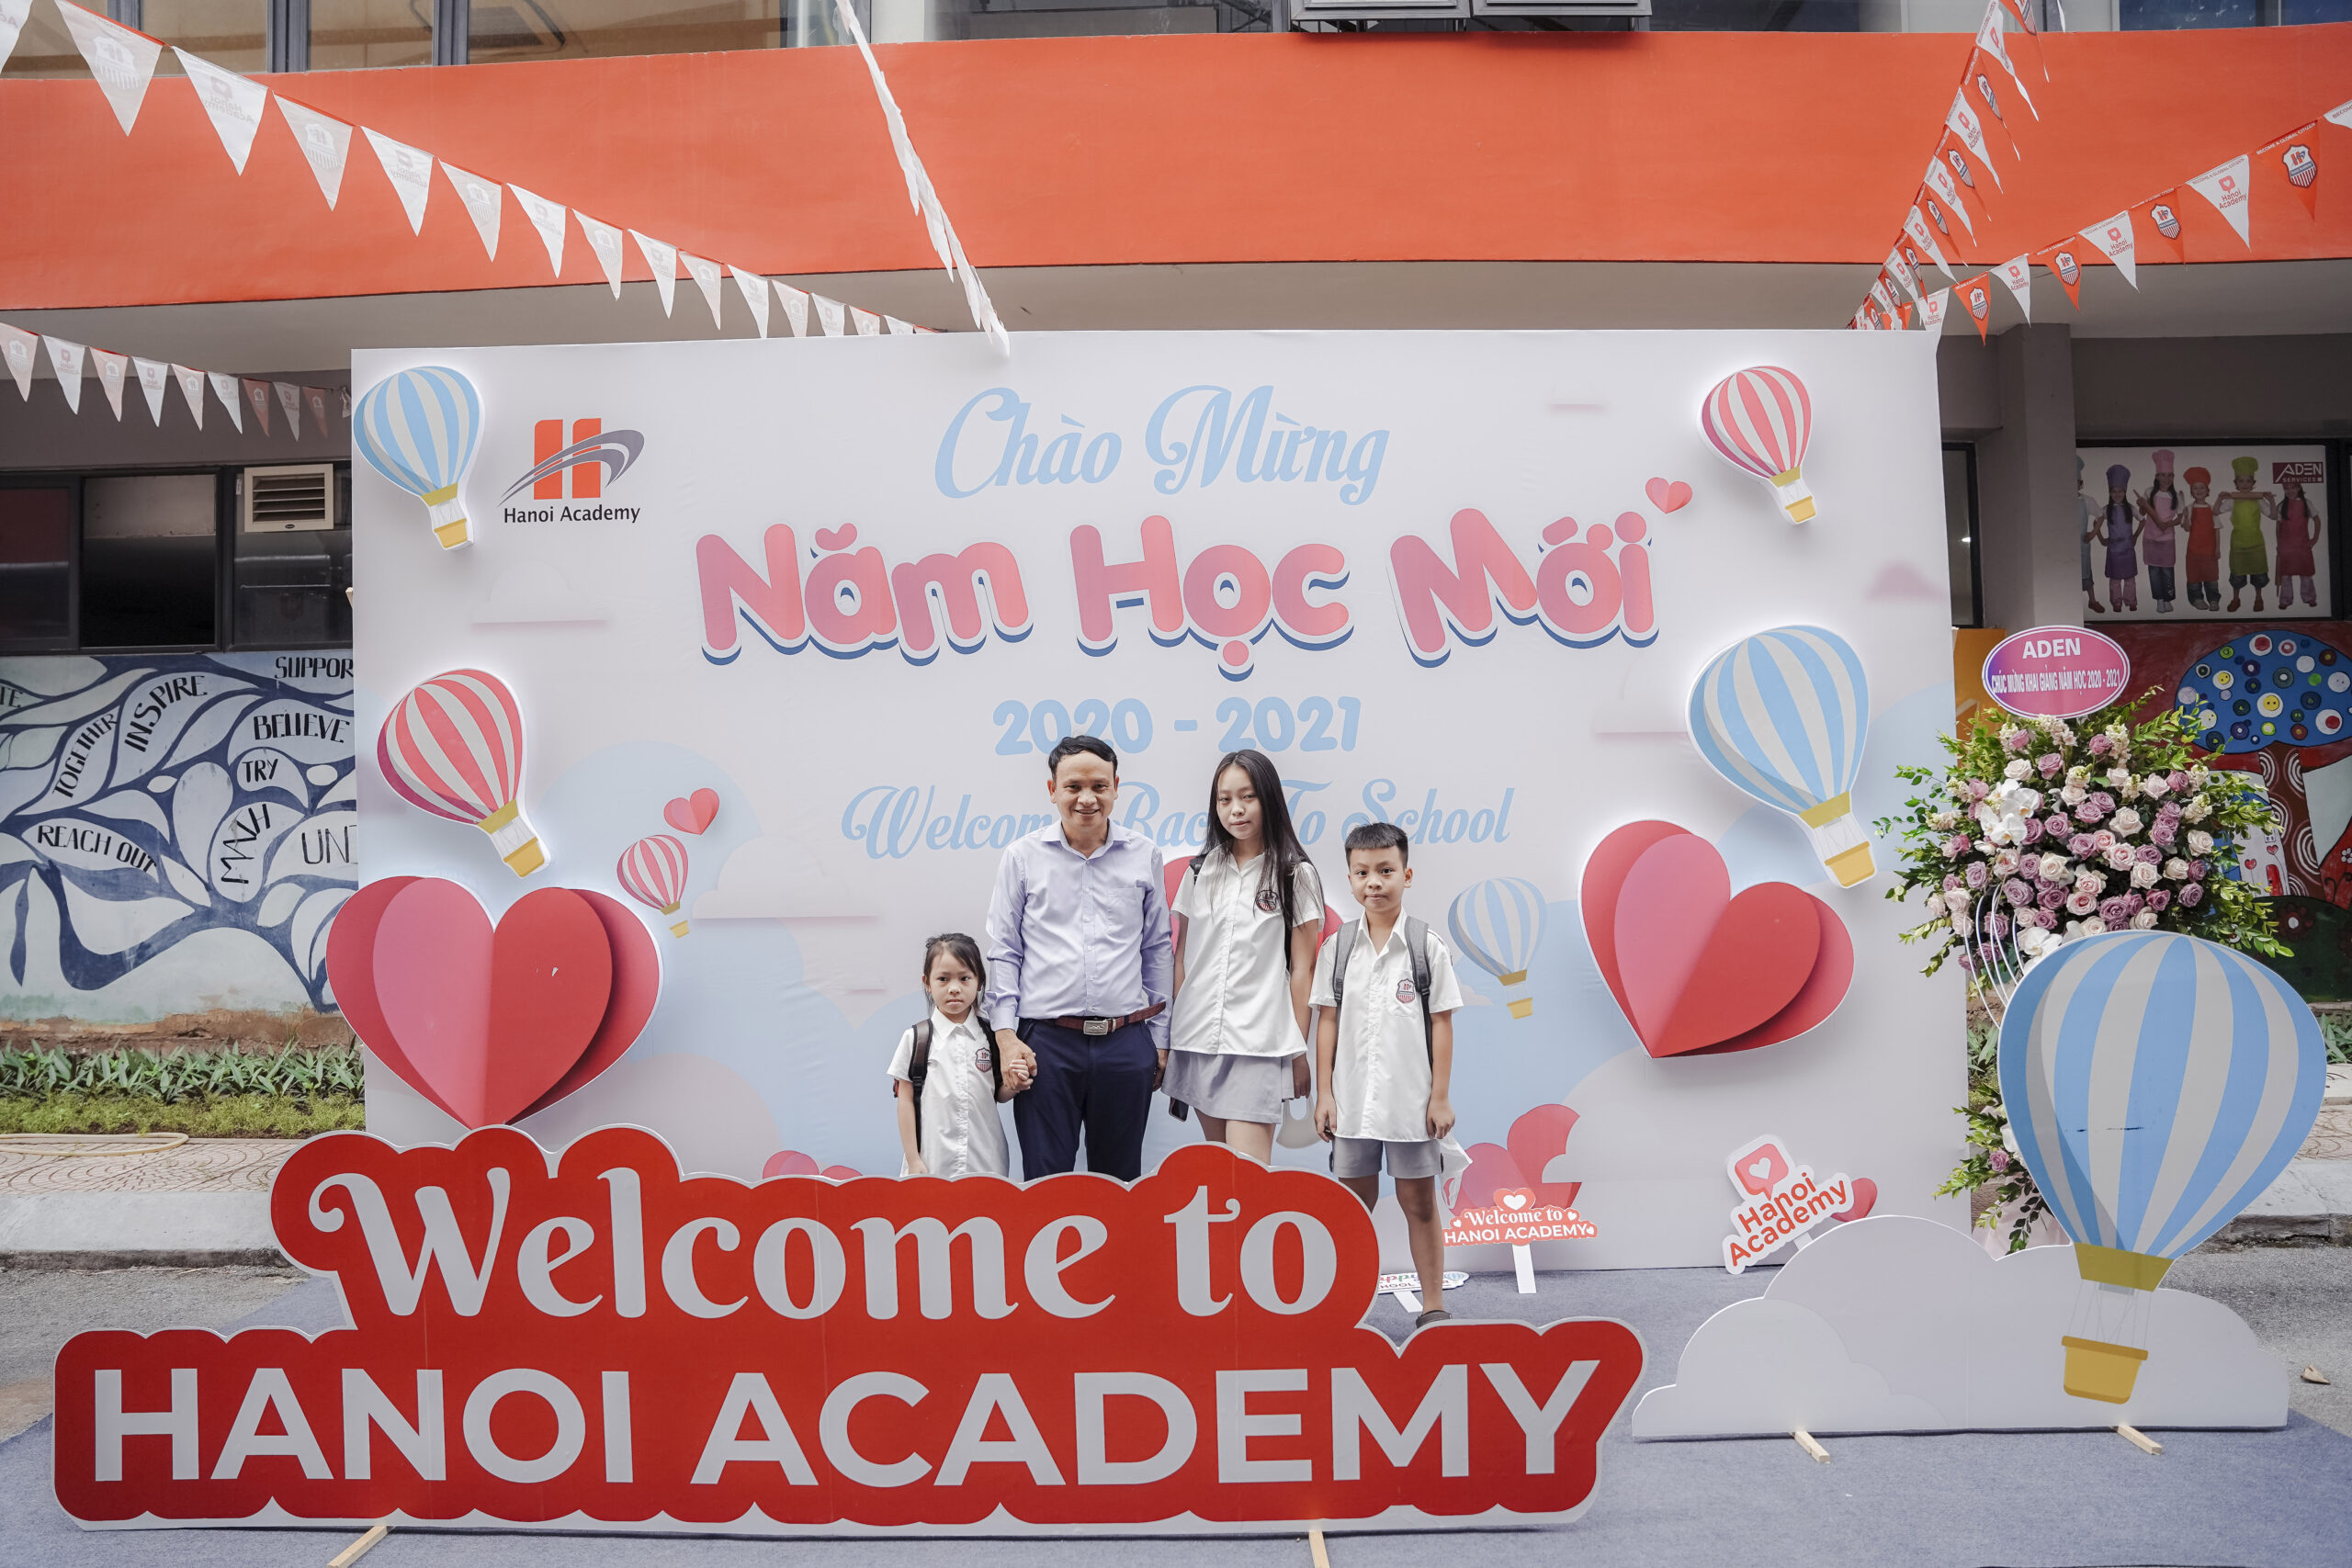 Ngắm nhìn những hình ảnh đẹp ngày tựu trường tại Hanoi Academy